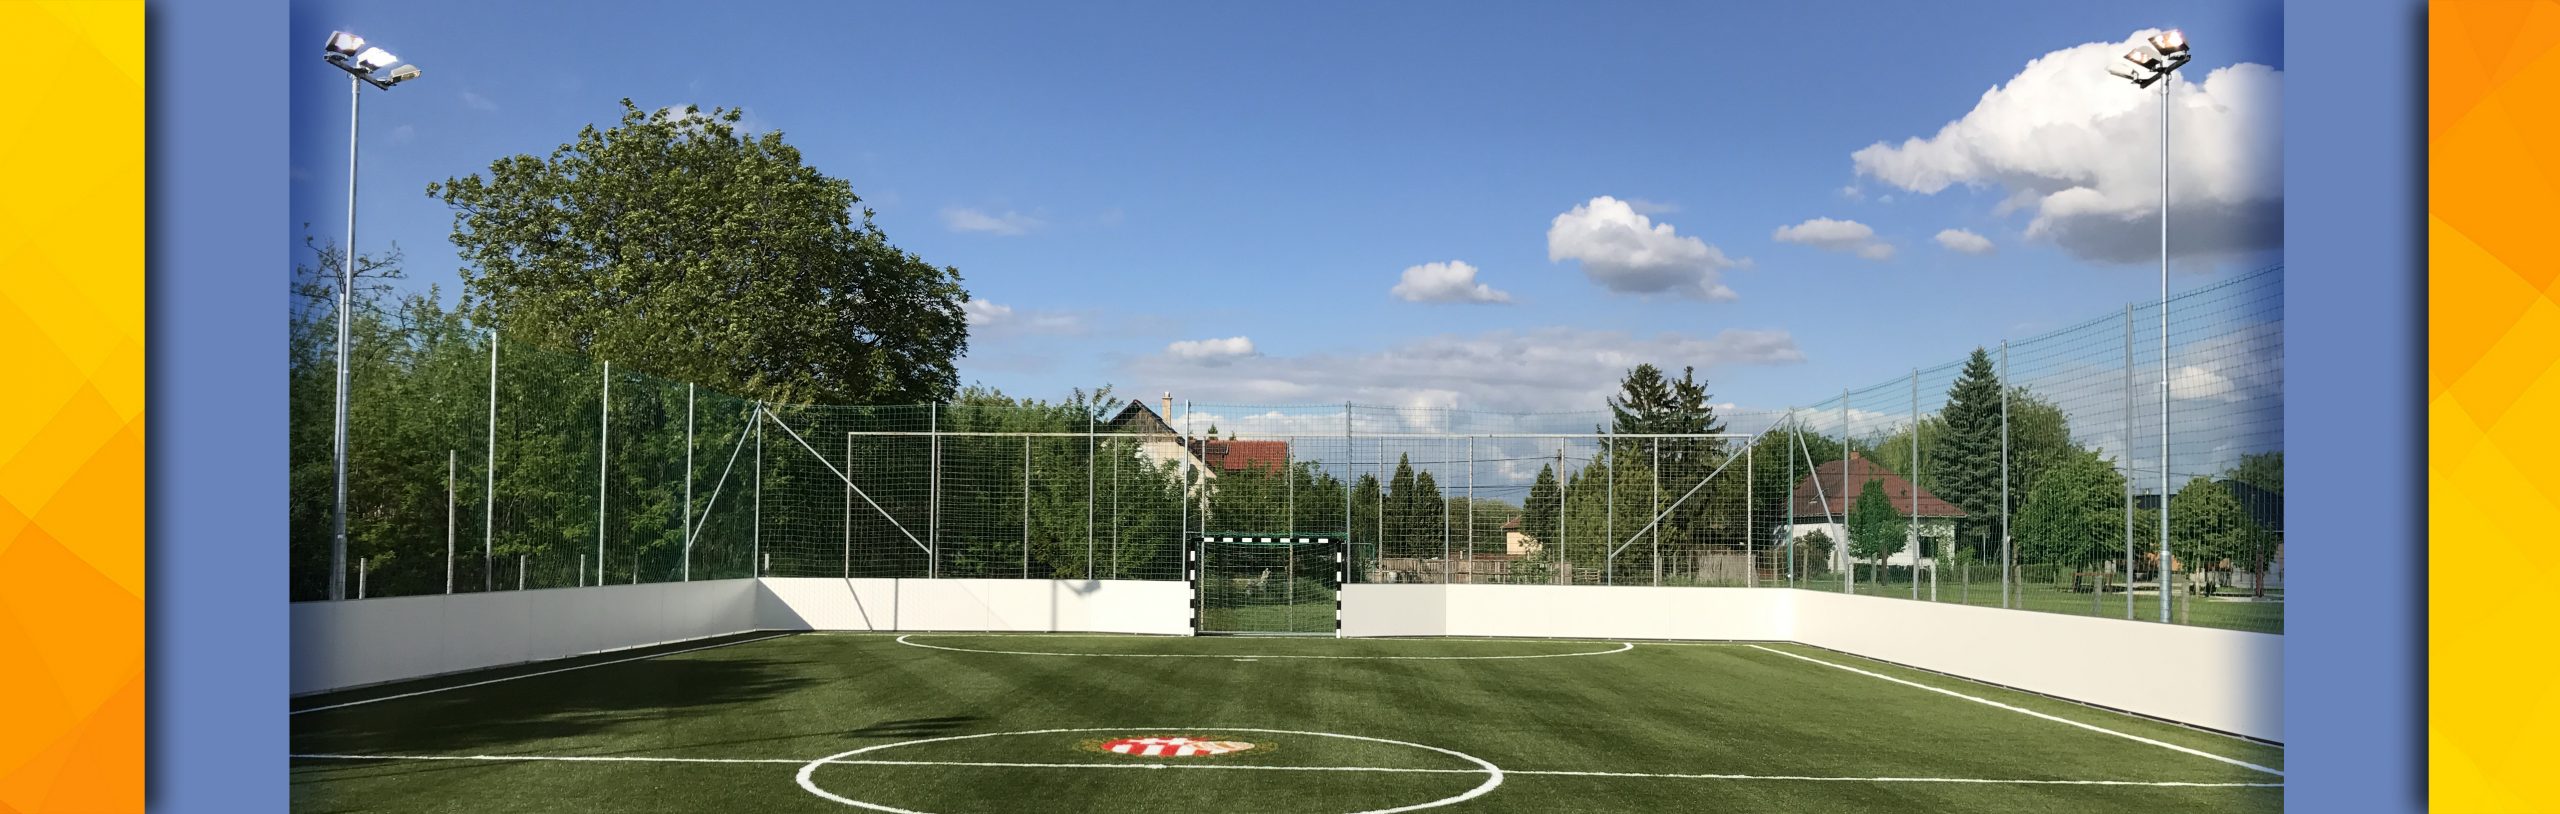 FC Tiszaújváros Edzőpálya2 – 120 lux LED